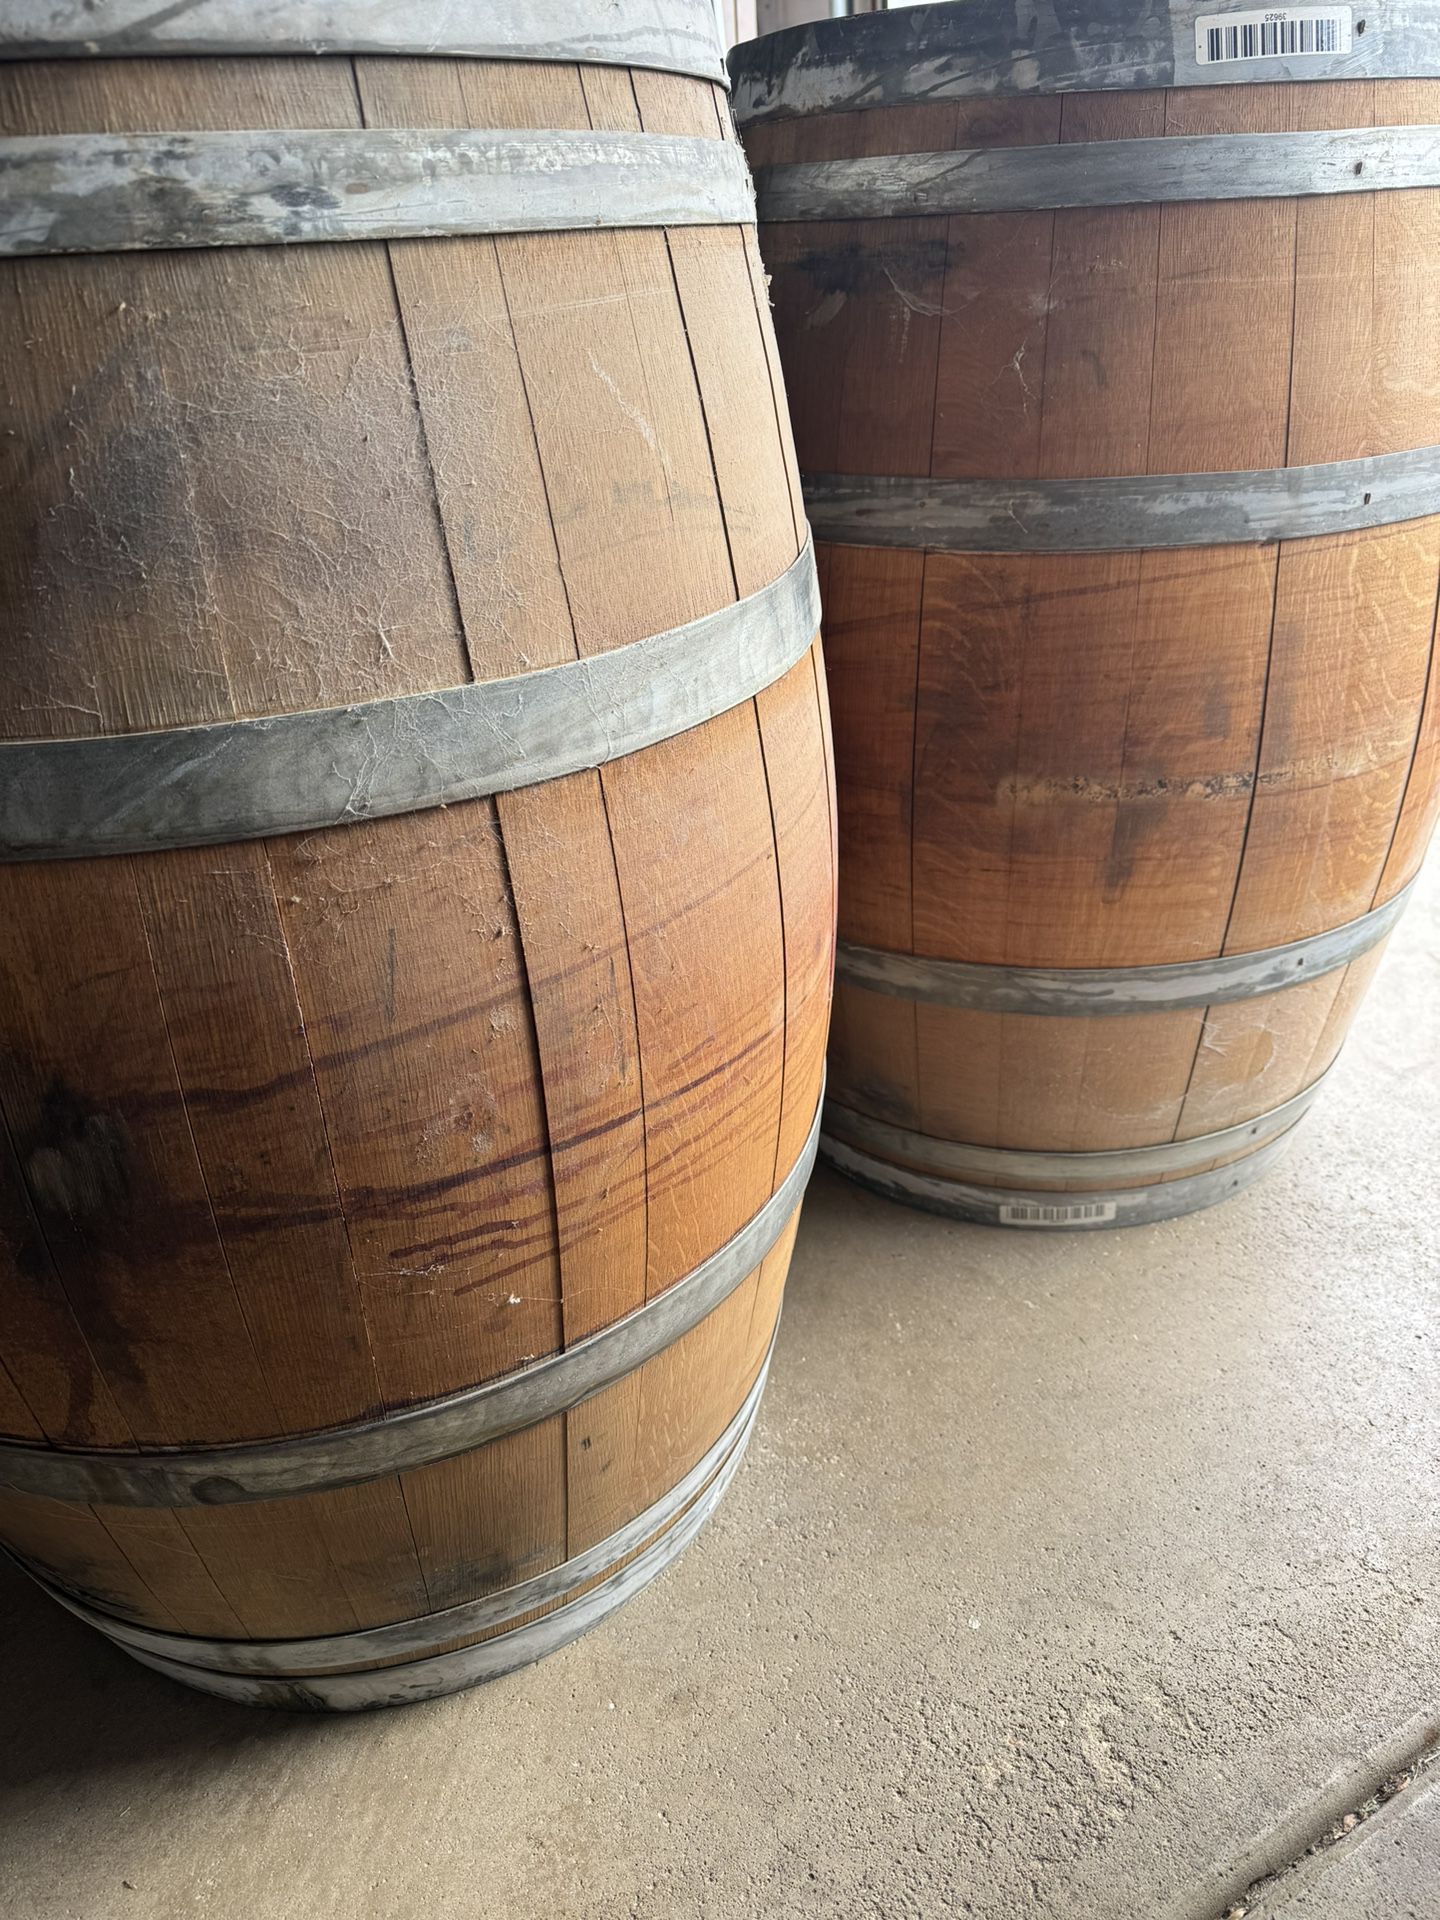 Old Wood Wine Barrels - 50 Gallon Barrels!